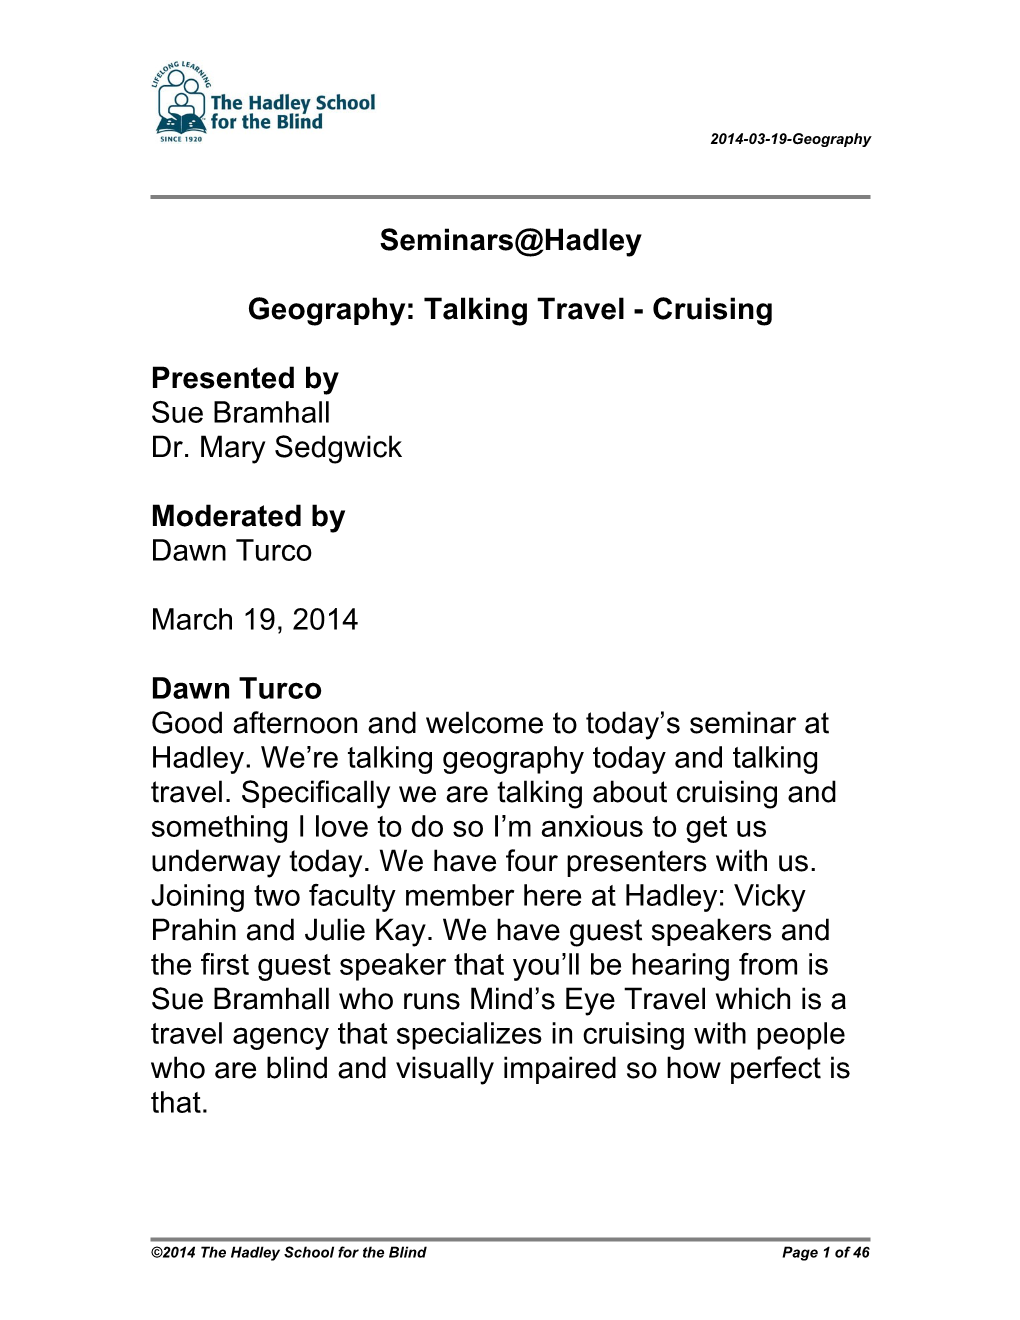 Geography: Talking Travel - Cruising